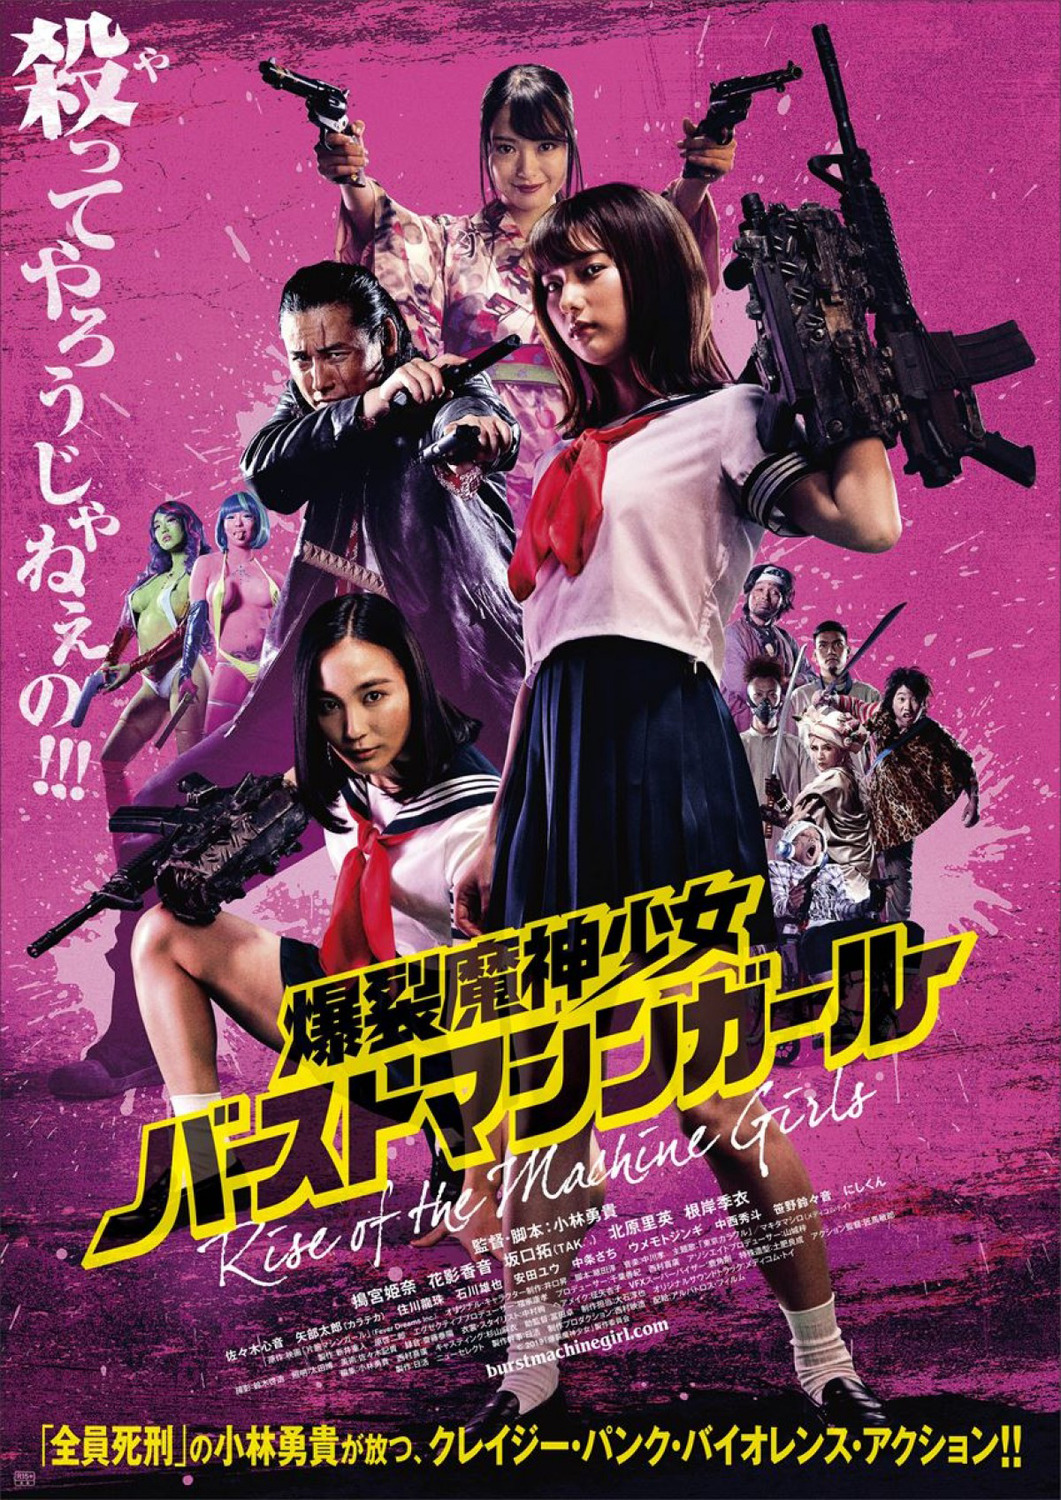 Extra Large Movie Poster Image for Bakuretsu mashin shôjo - bâsuto mashin gâru 